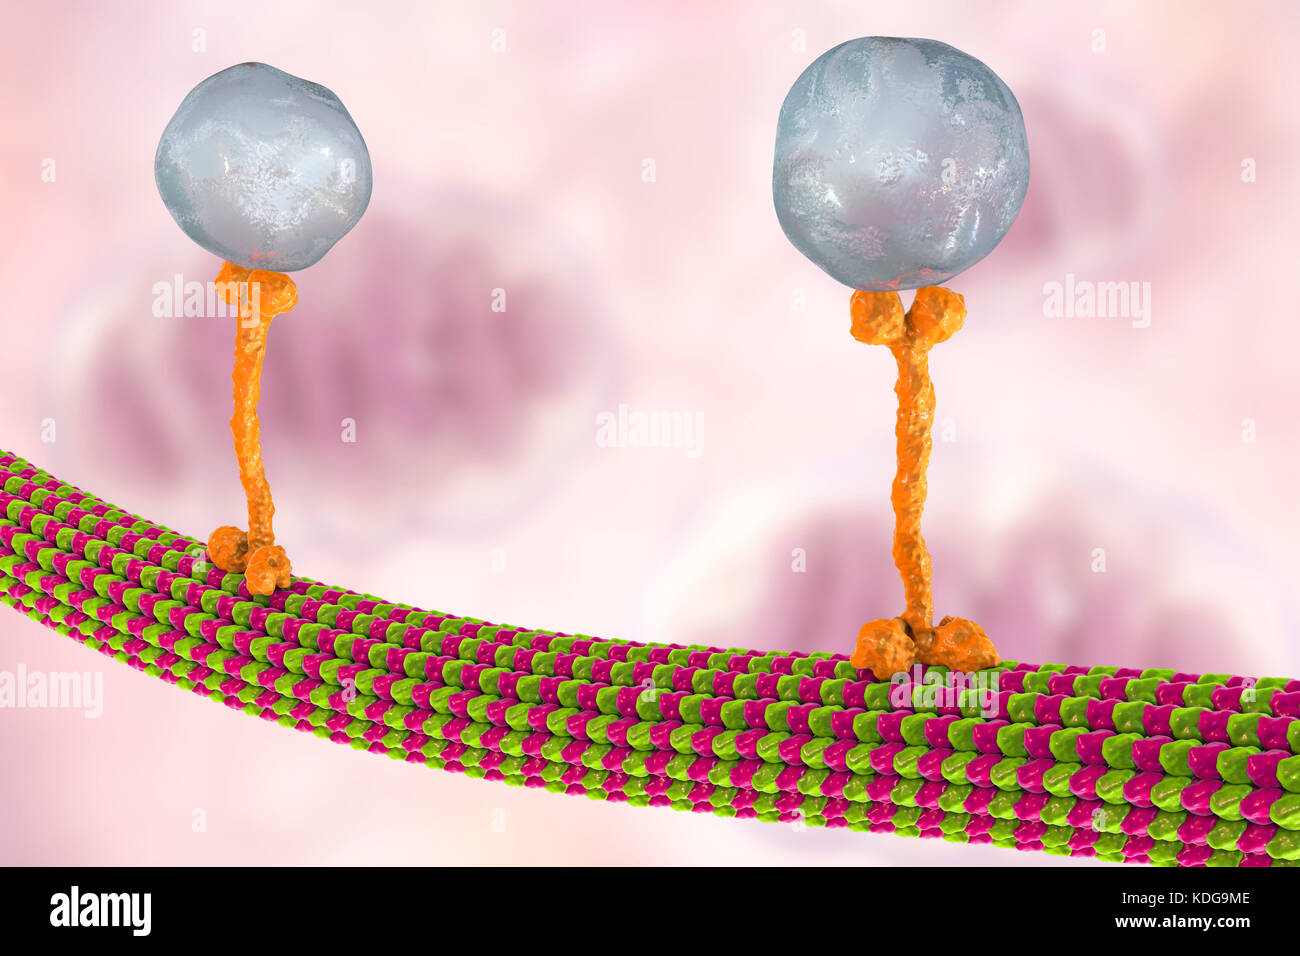 Intrazellulären Transport. Computer Abbildung von Vesikeln (Kugeln) entlang der Mikrotubuli durch ein Protein kinesin Motor transportiert werden. Kinesins sind in der Lage, 'Walk' entlang der Mikrotubuli. Mikrotubuli sind Polymere aus dem Protein Tubulin und sind Bestandteil des Zytoskeletts. Stockfoto